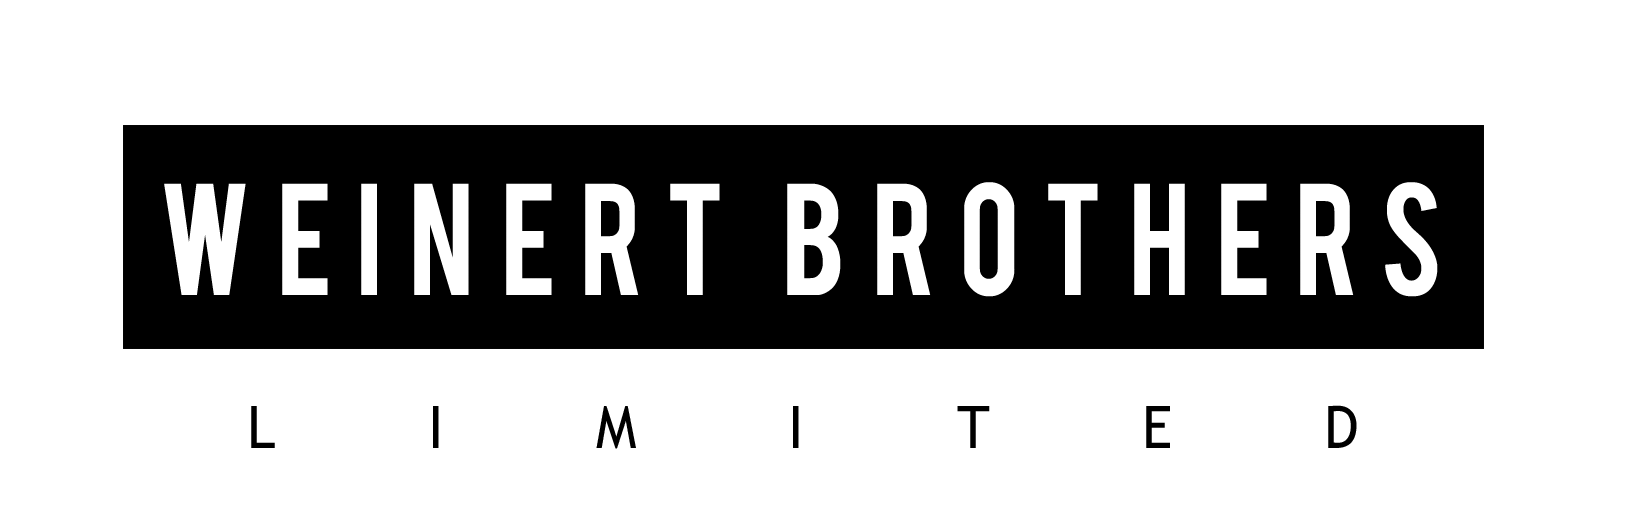 WeinertBrothers_Logo